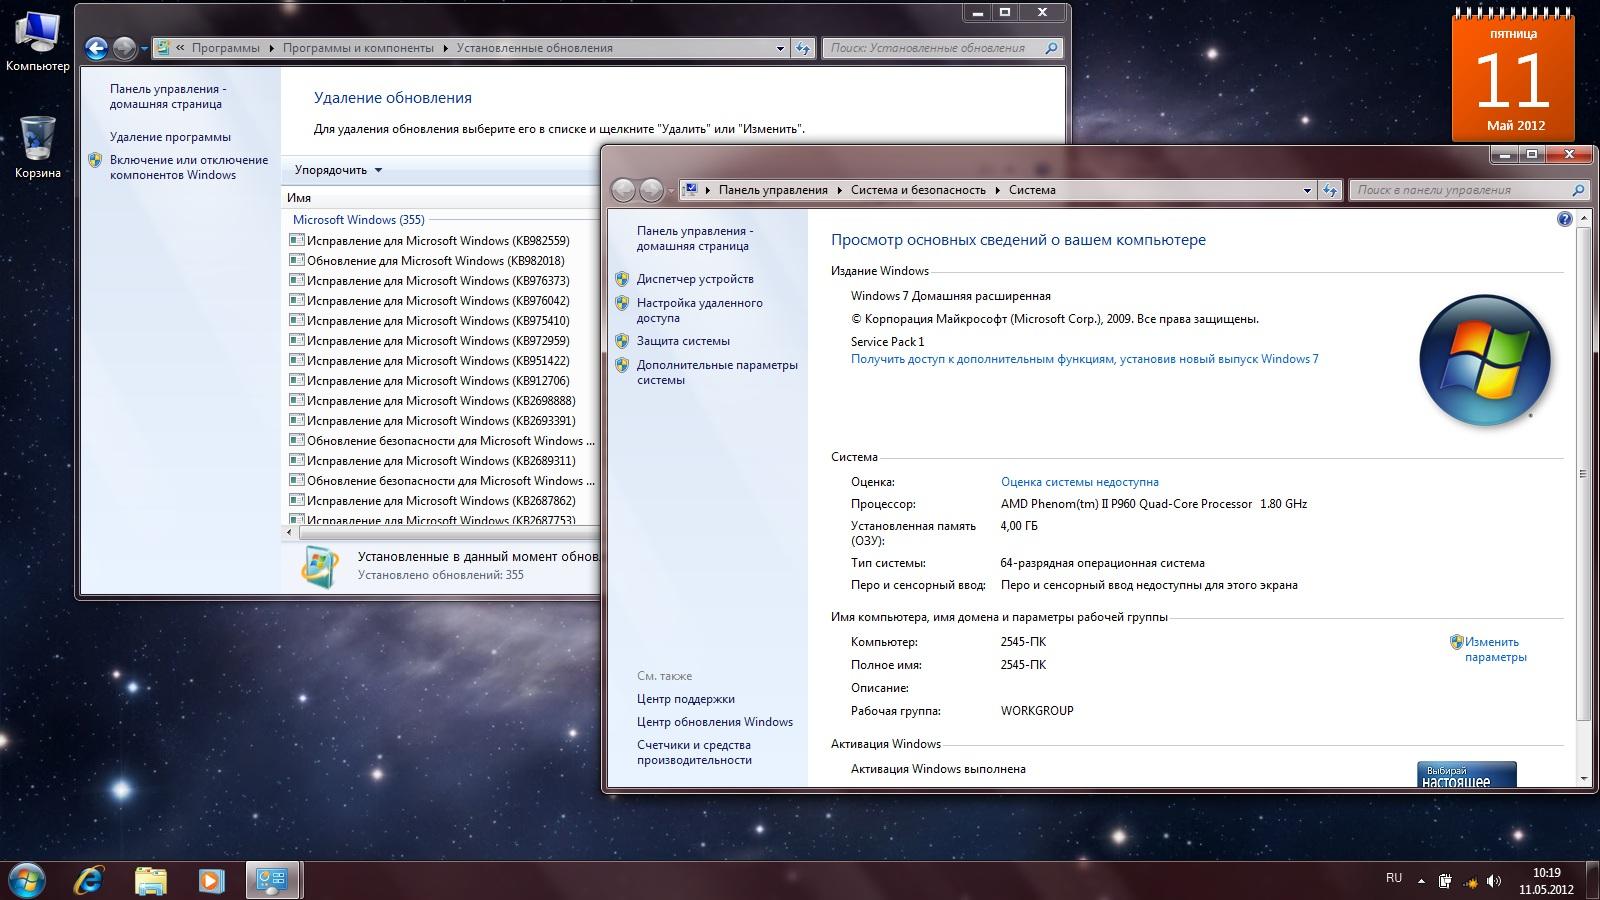 Активация windows core edition. Windows 7 домашняя расширенная. Системные требования Windows 7 10 11. Компоненты виндовс 7 список. Windows 7 домашняя расширенная бесплатно фото ключа.